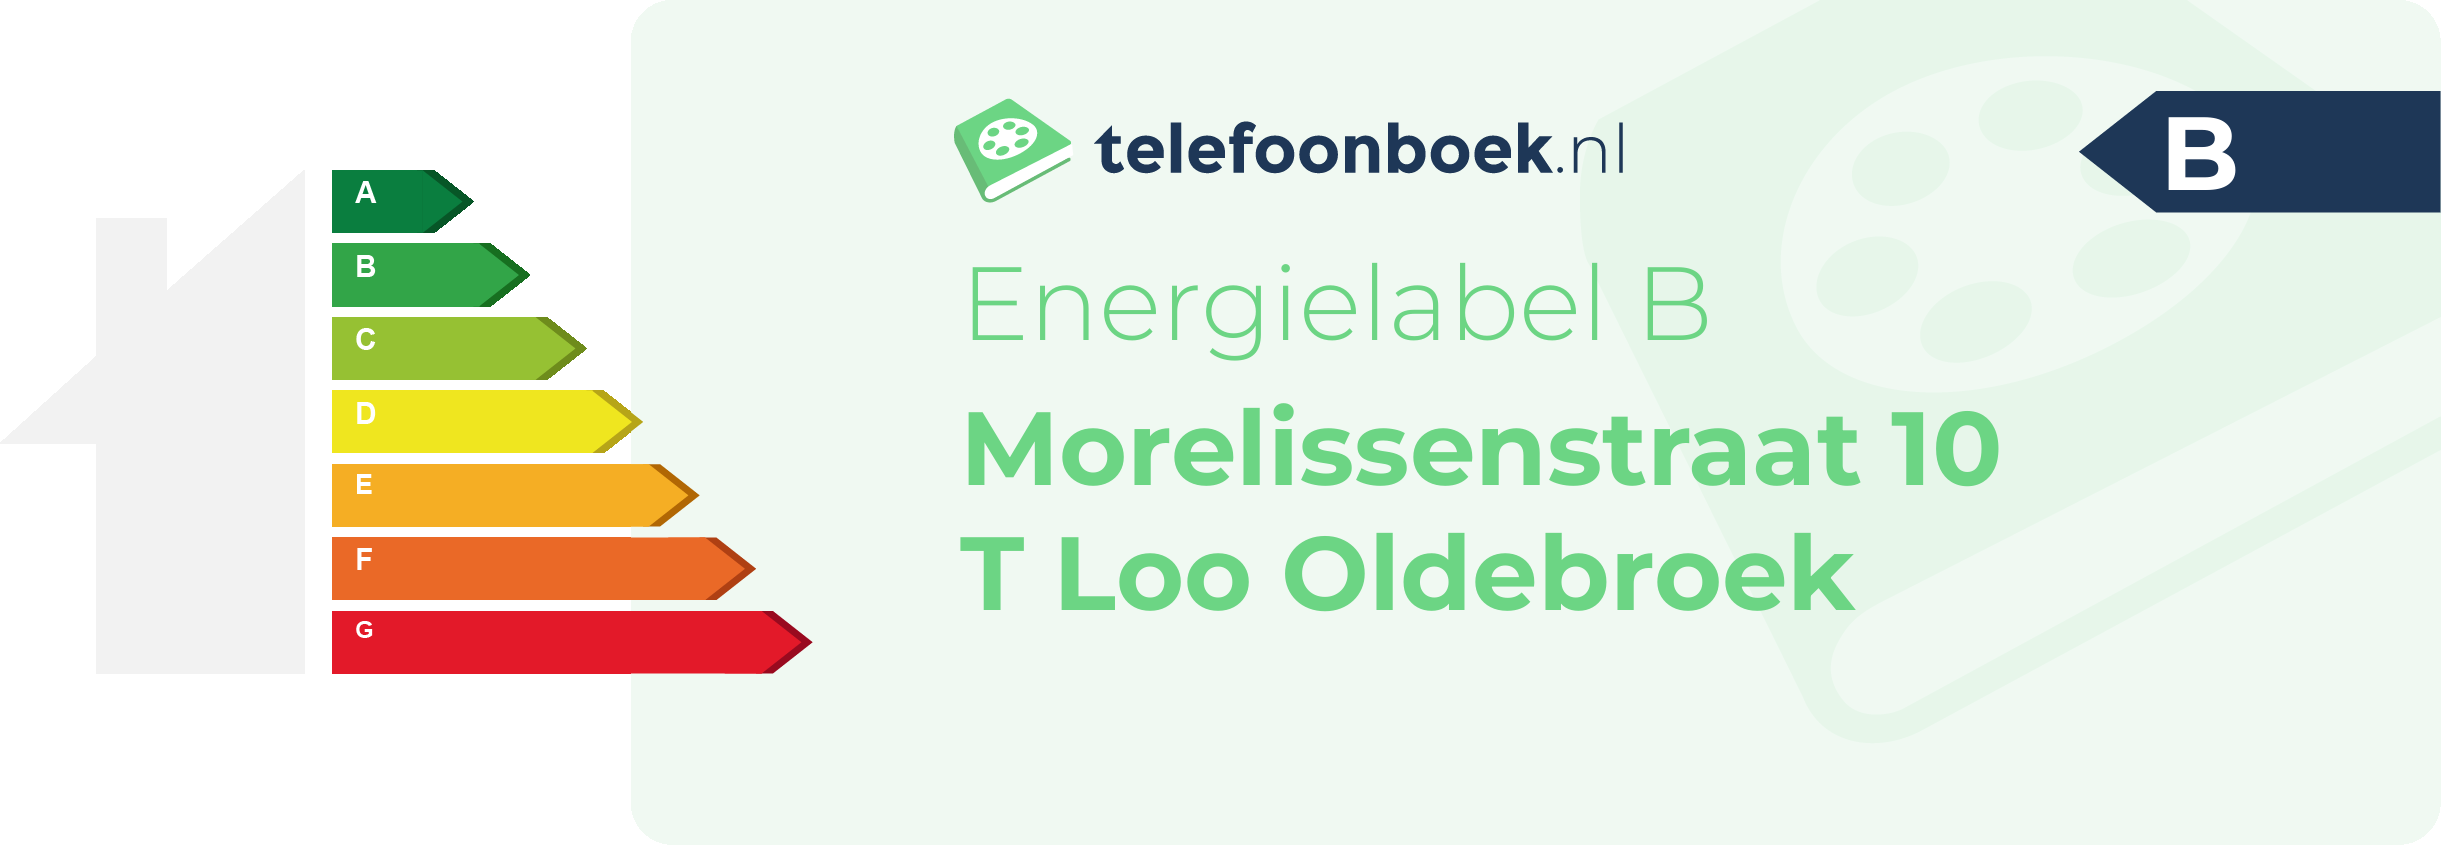 Energielabel Morelissenstraat 10 T Loo Oldebroek